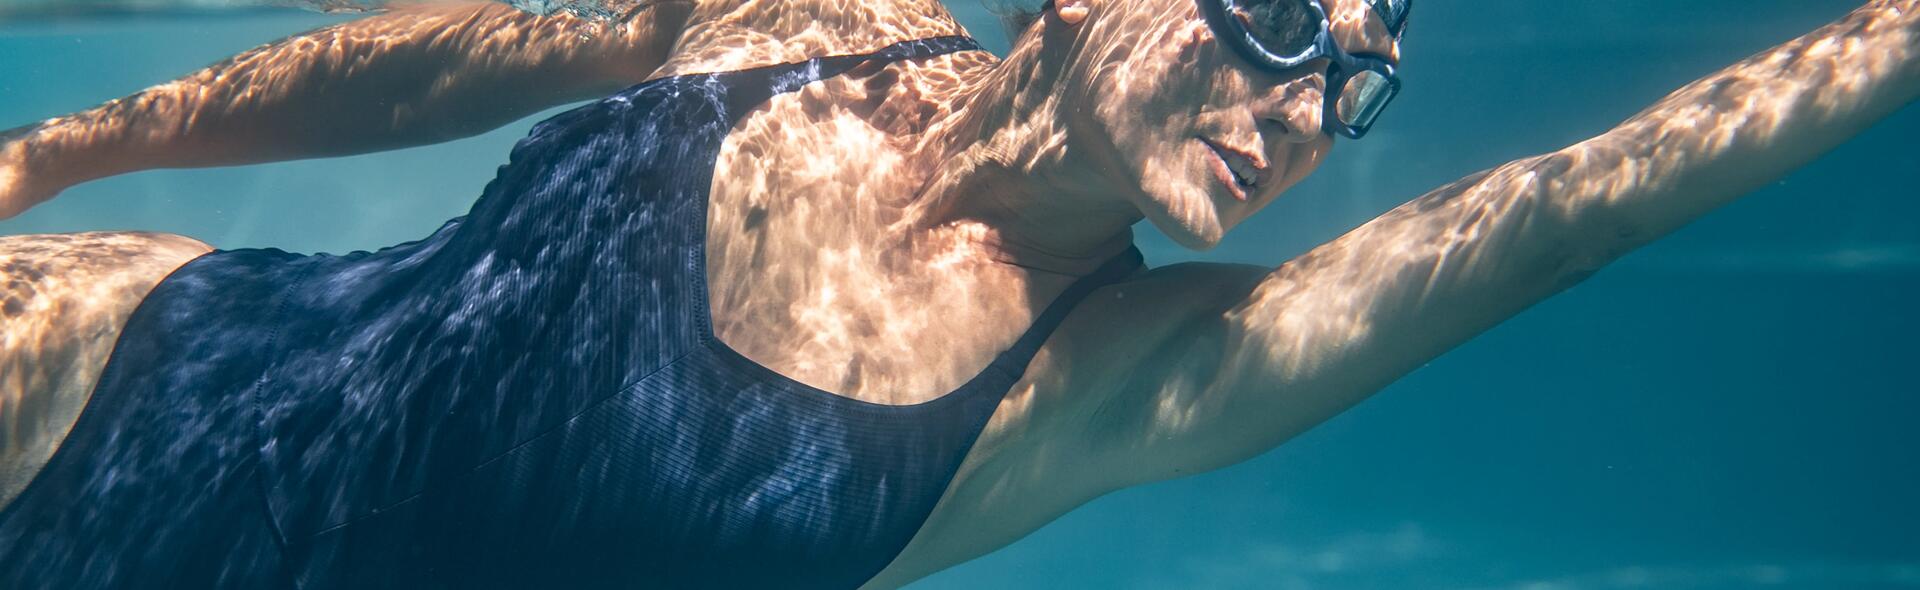 kobieta w stroju pływackim i okularkach pływackich pływająca na basenie